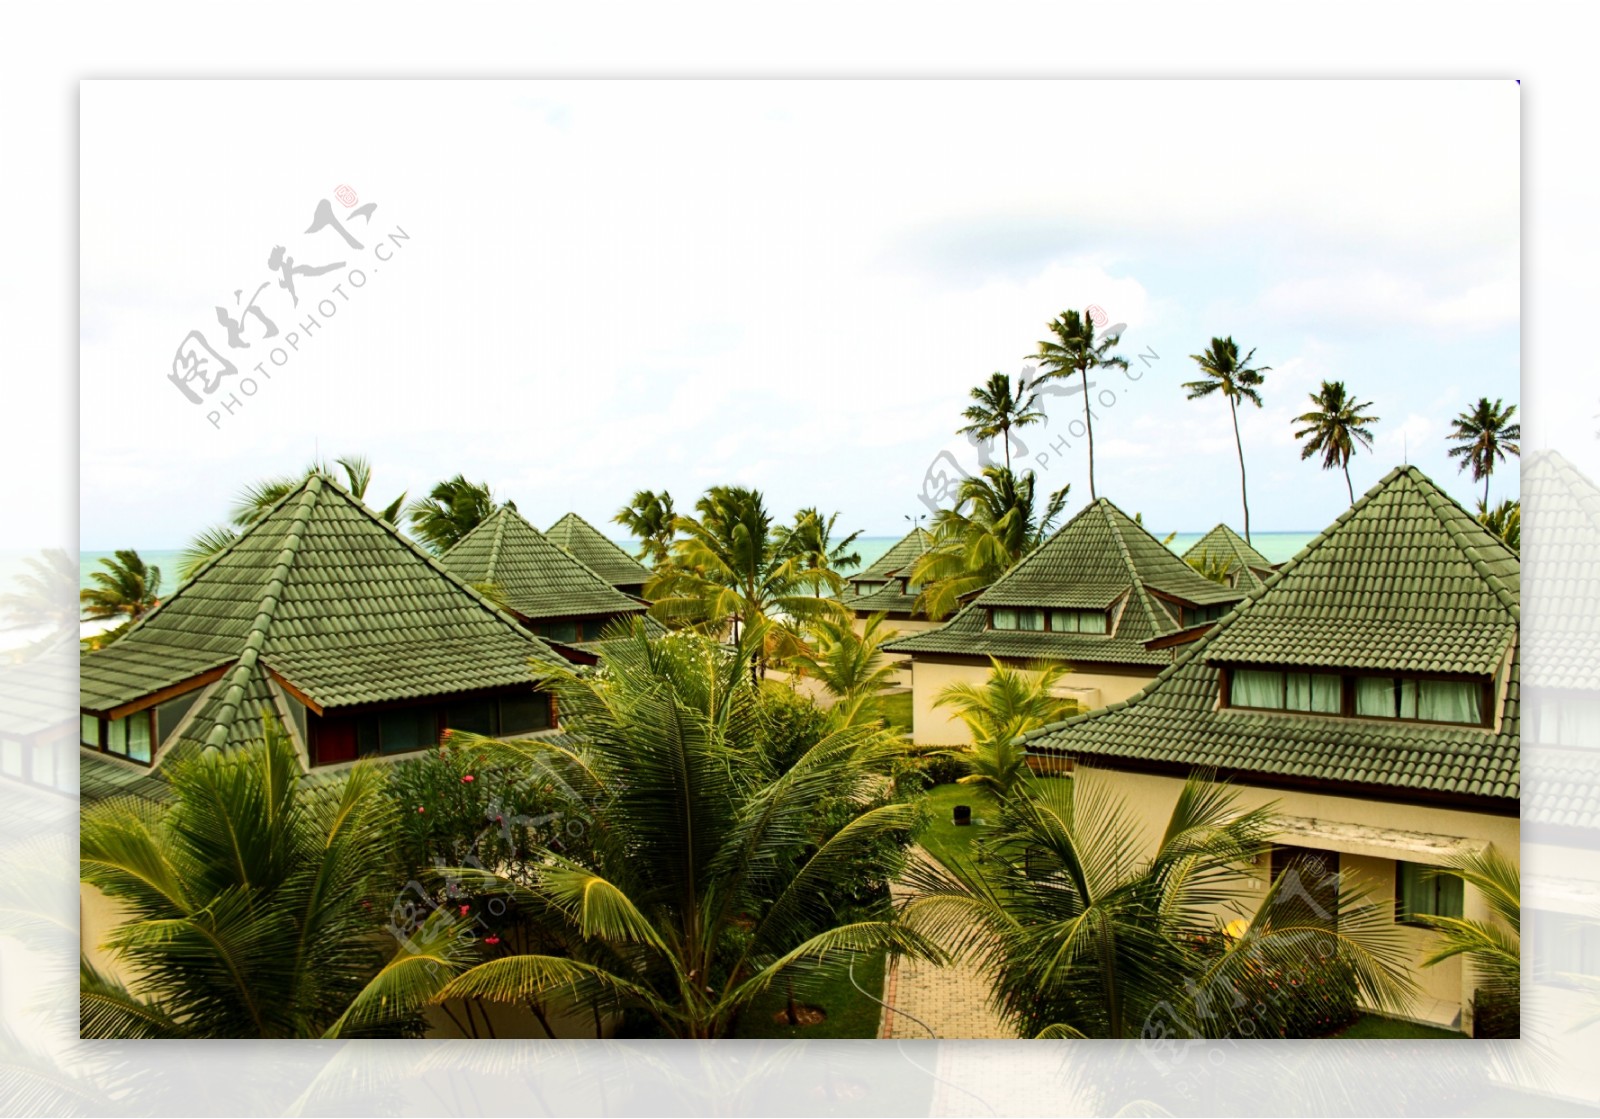 椰树林里的别墅摄影高清图片